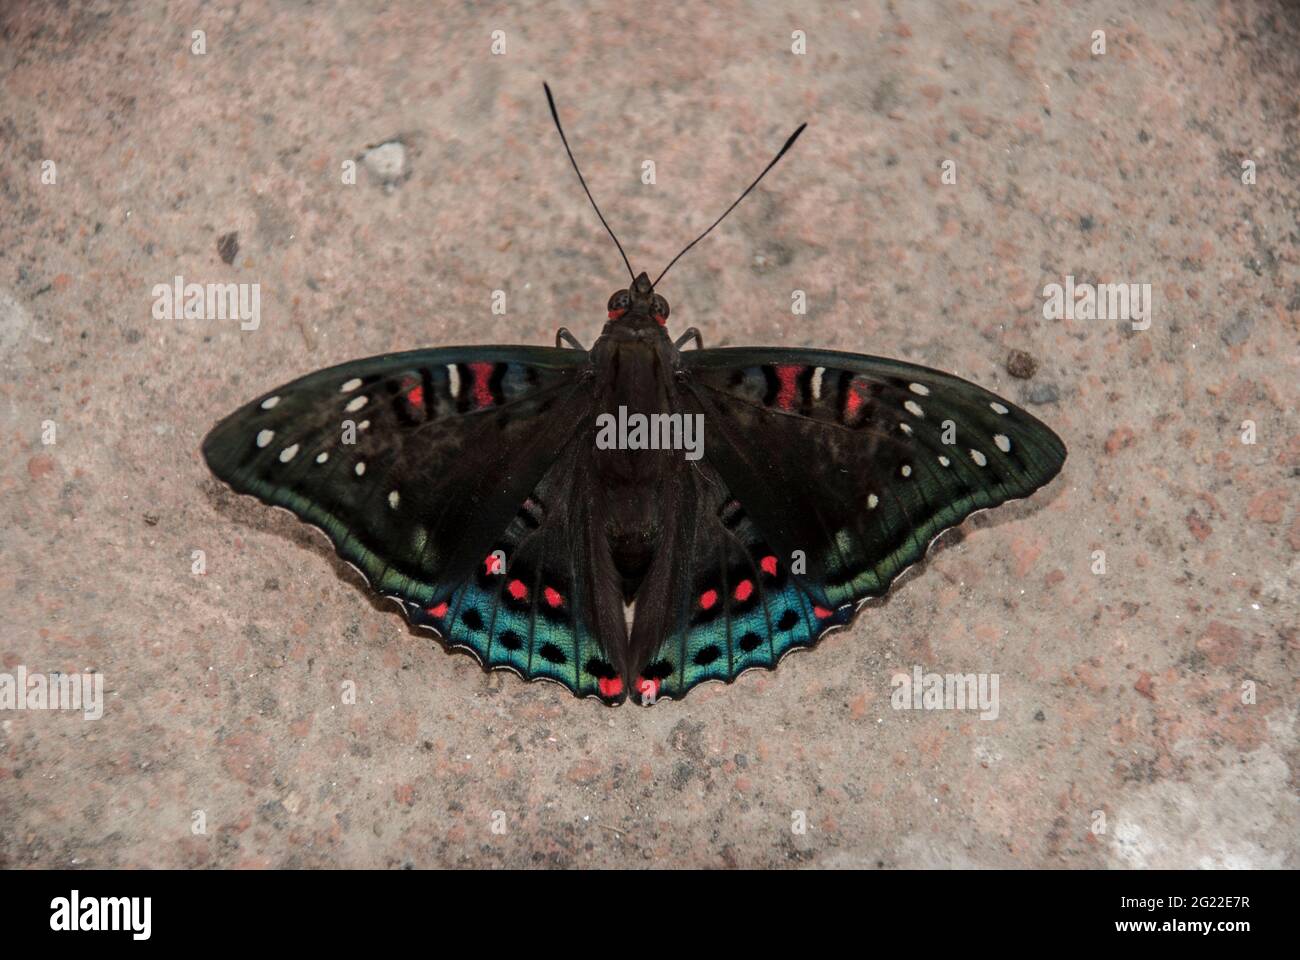 Farfalla Pioppo Admiral (Limenitis populi) closeup. Larca marrone ali, macchie bianche, rosso e blu bordatura - rare specie in pericolo bisogno di protezione. Foto Stock